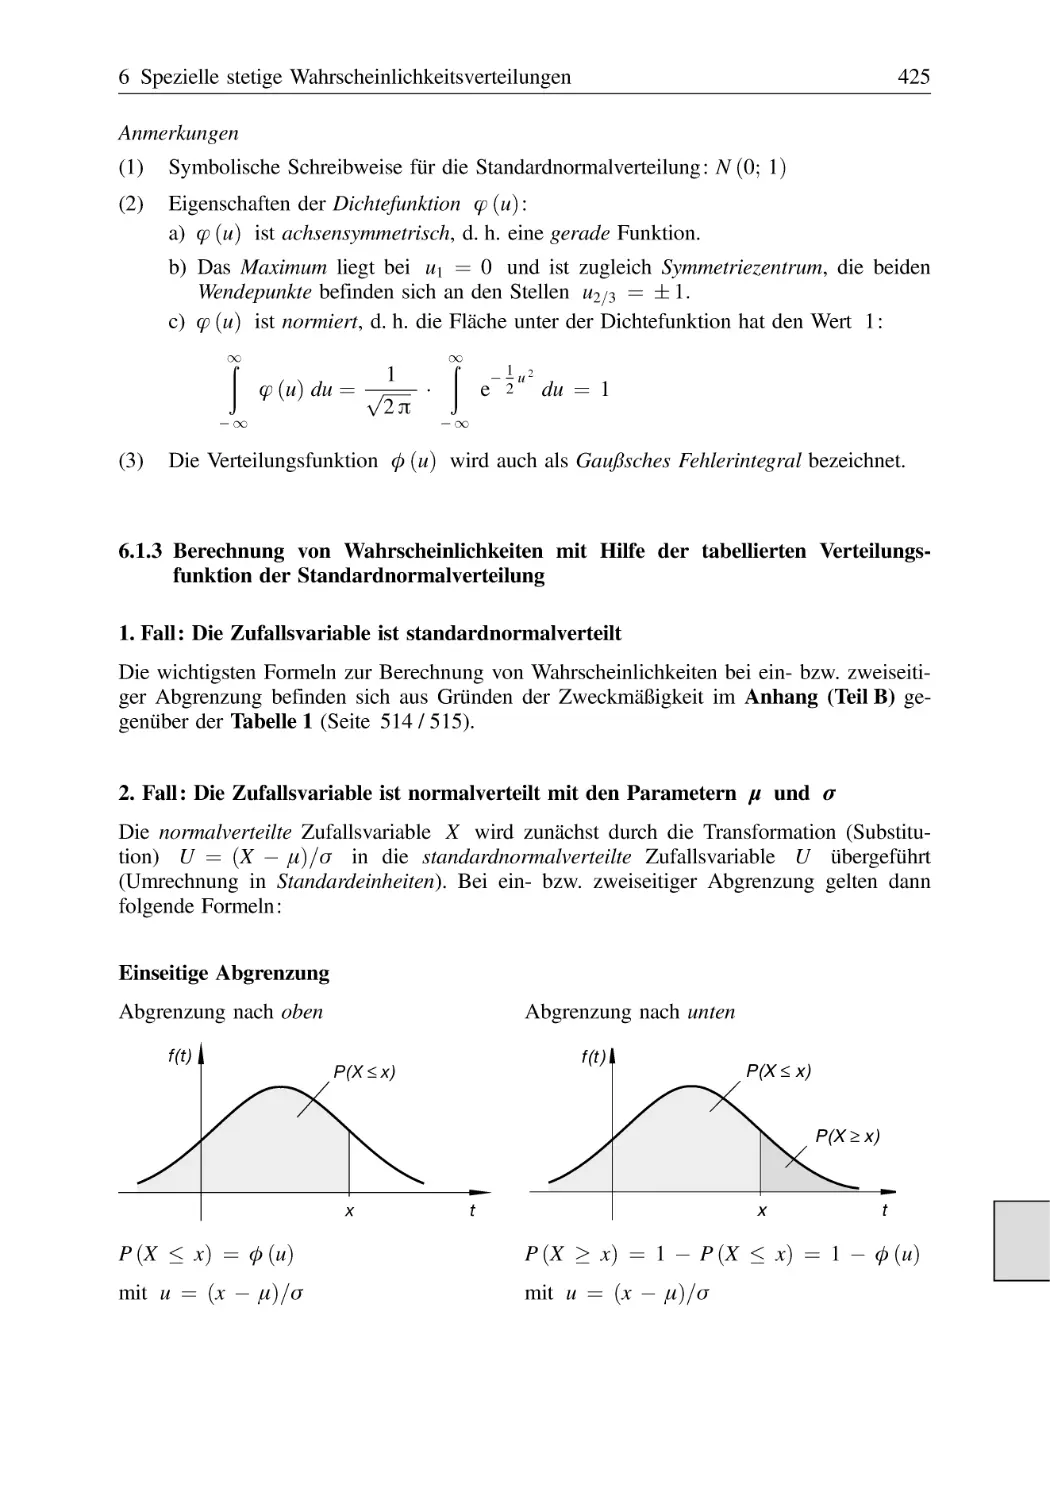 6.1.3 Berechnung von Wahrscheinlichkeiten mit Hilfe der tabellierten Verteilungsfunktion der Standardnormalverteilung